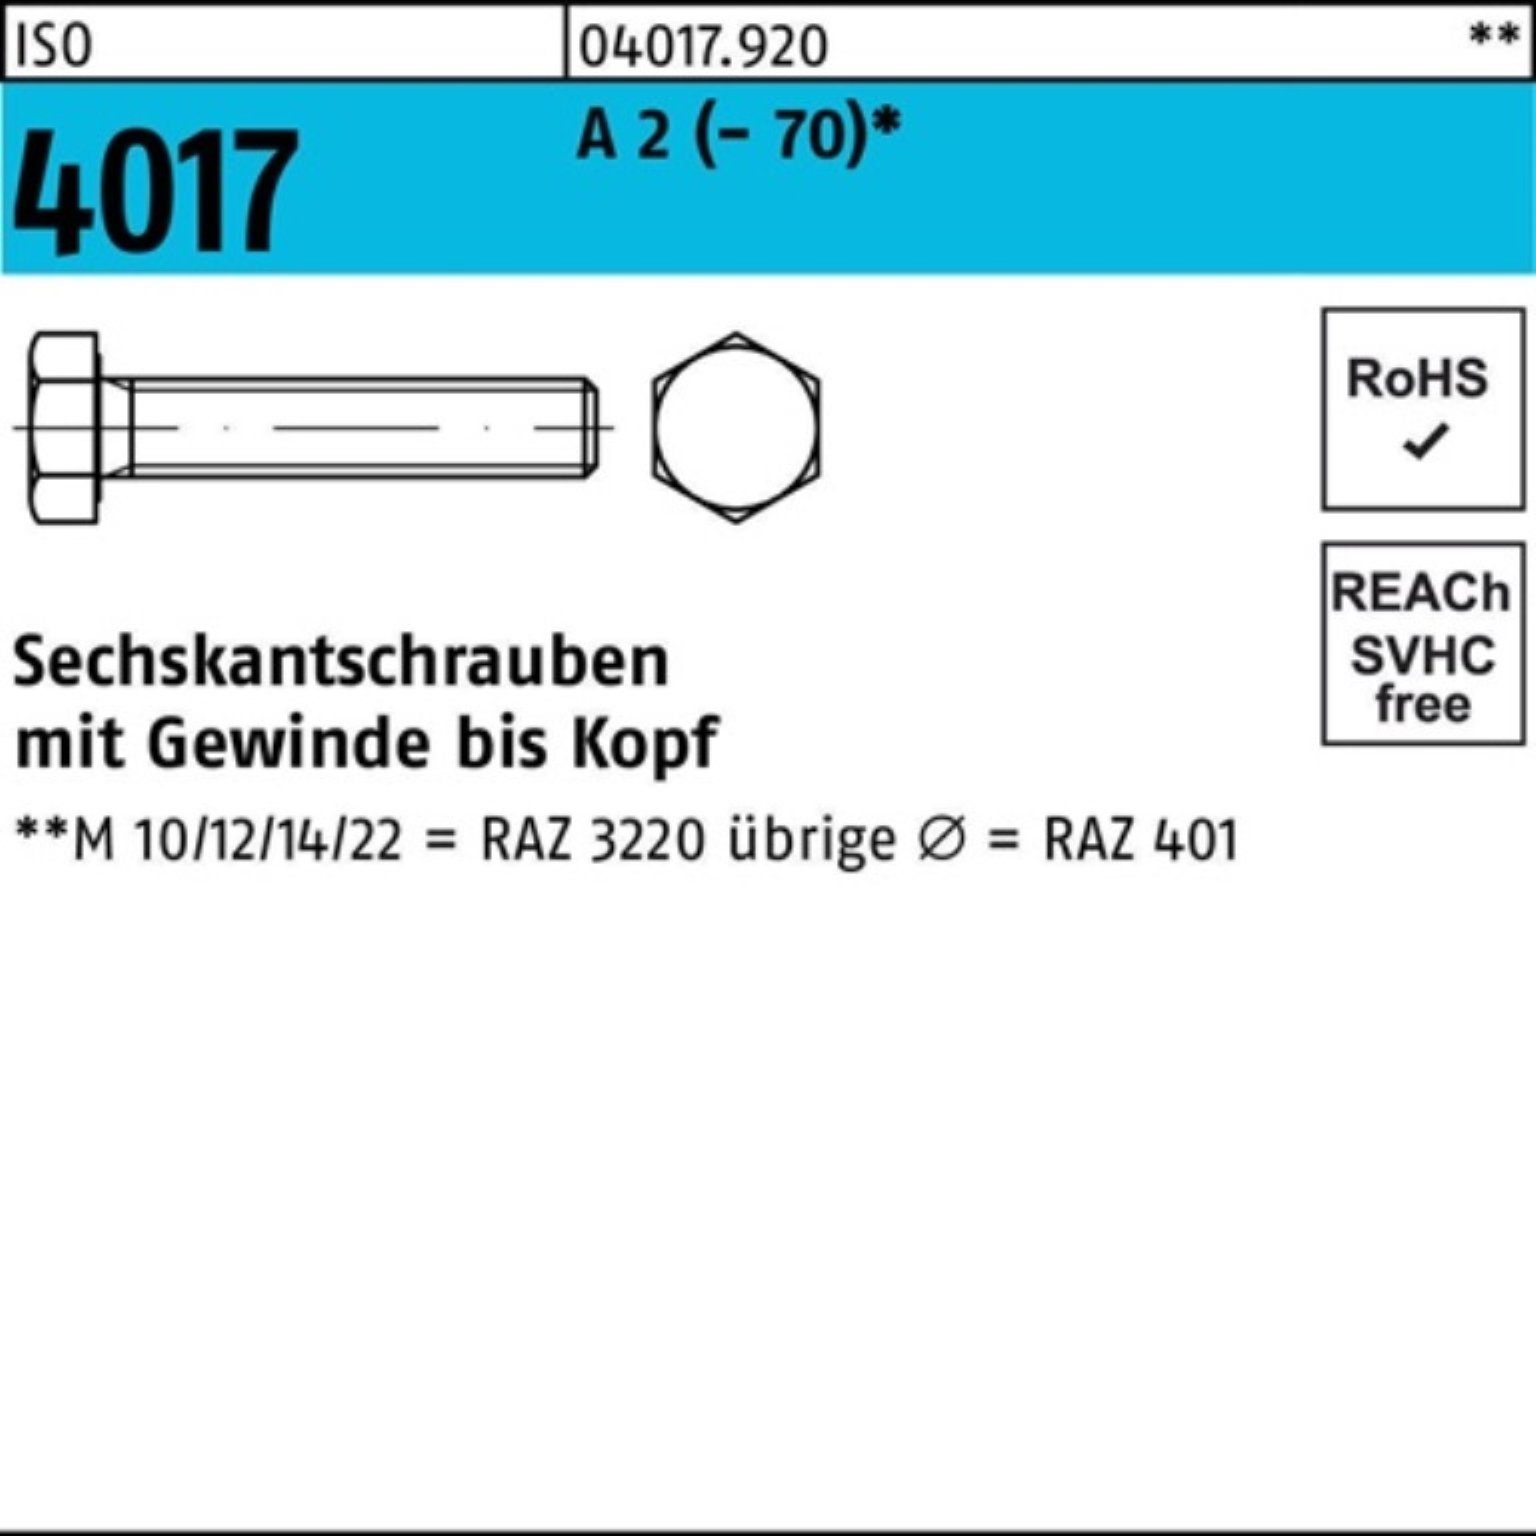 Bufab Sechskantschraube 100er Pack Sechskantschraube ISO 4017 VG M10x 12 A 2 (70) 100 Stück